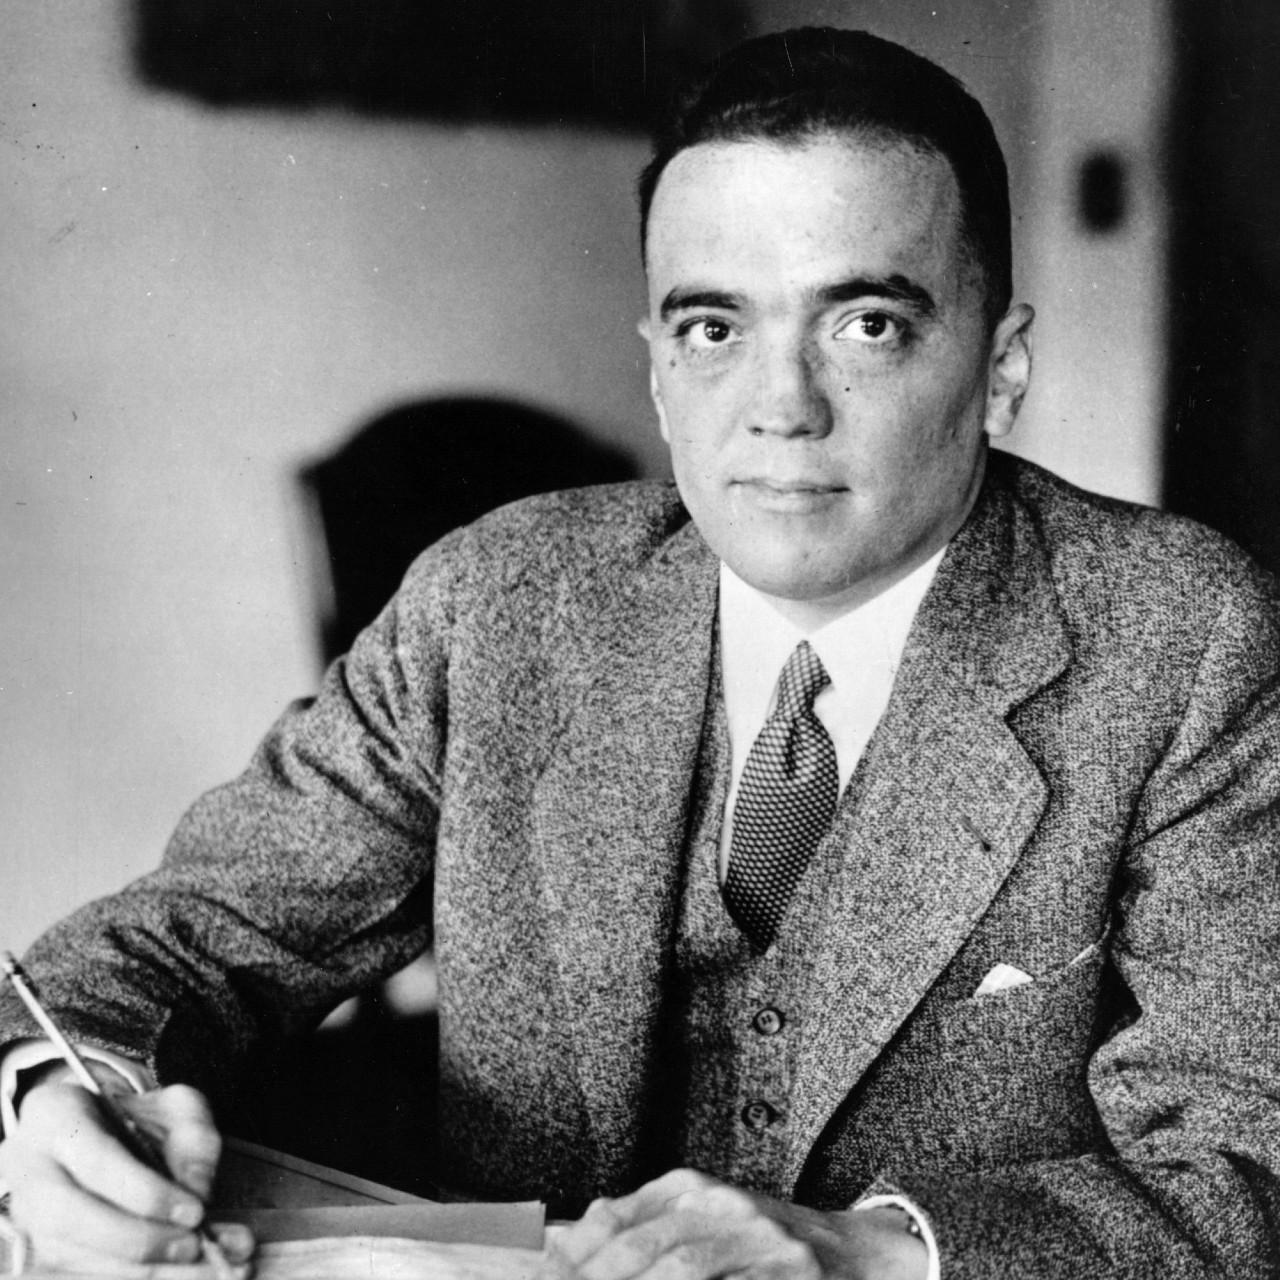 5. J. Edgar Hoover